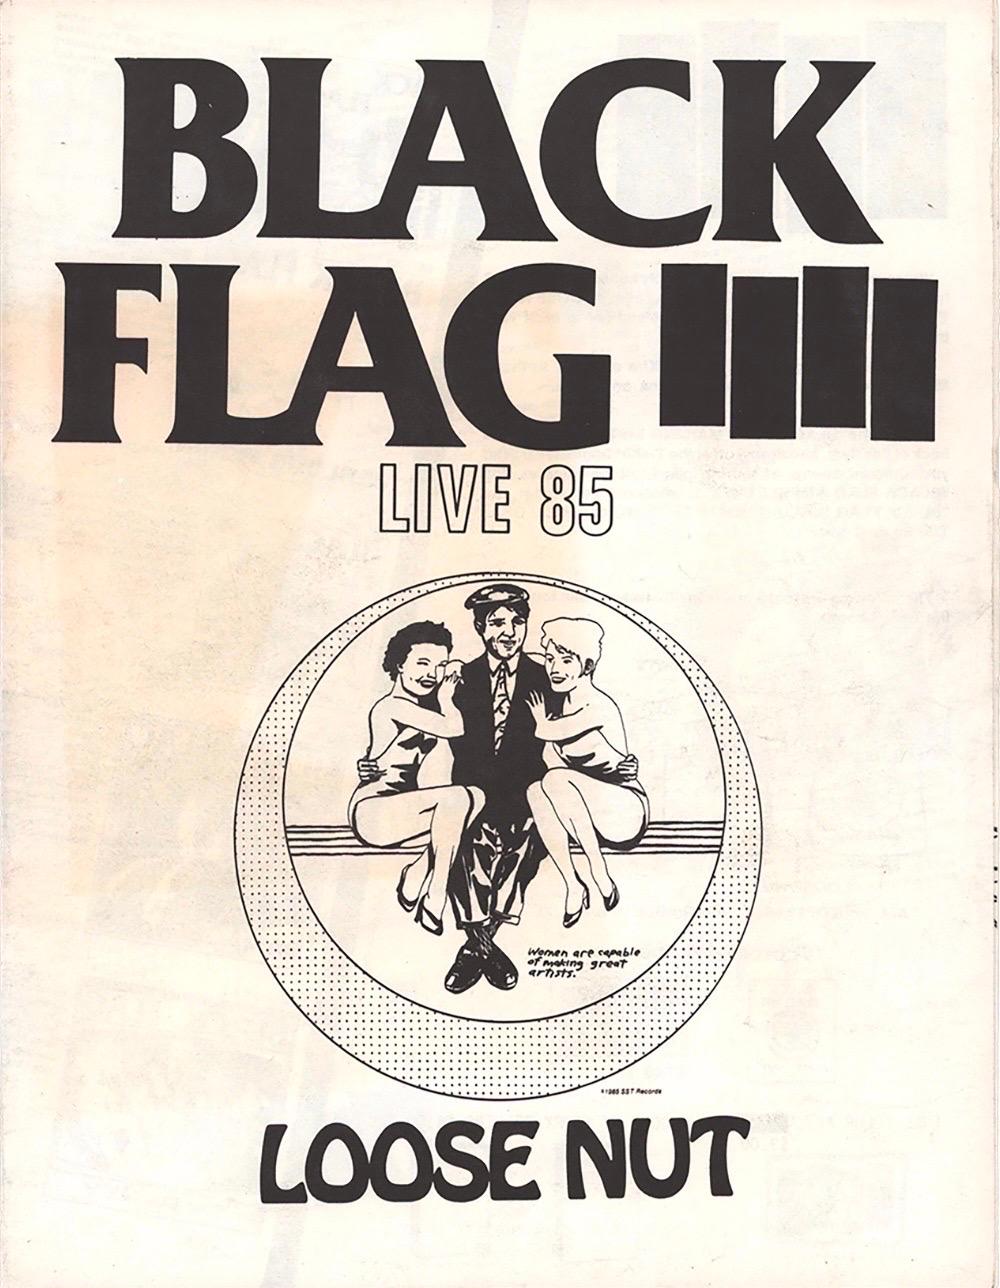 Raymond Pettibon, "Black Flag Live '85 Loose Nut" :
Dépliant recto-verso illustré par Raymond Pettibon pour SST Records annonçant les disques de Black Flag et les livres de Raymond Pettibon (image 4). 

Imprimé en offset ; 8.5 x 11 pouces plié fermé